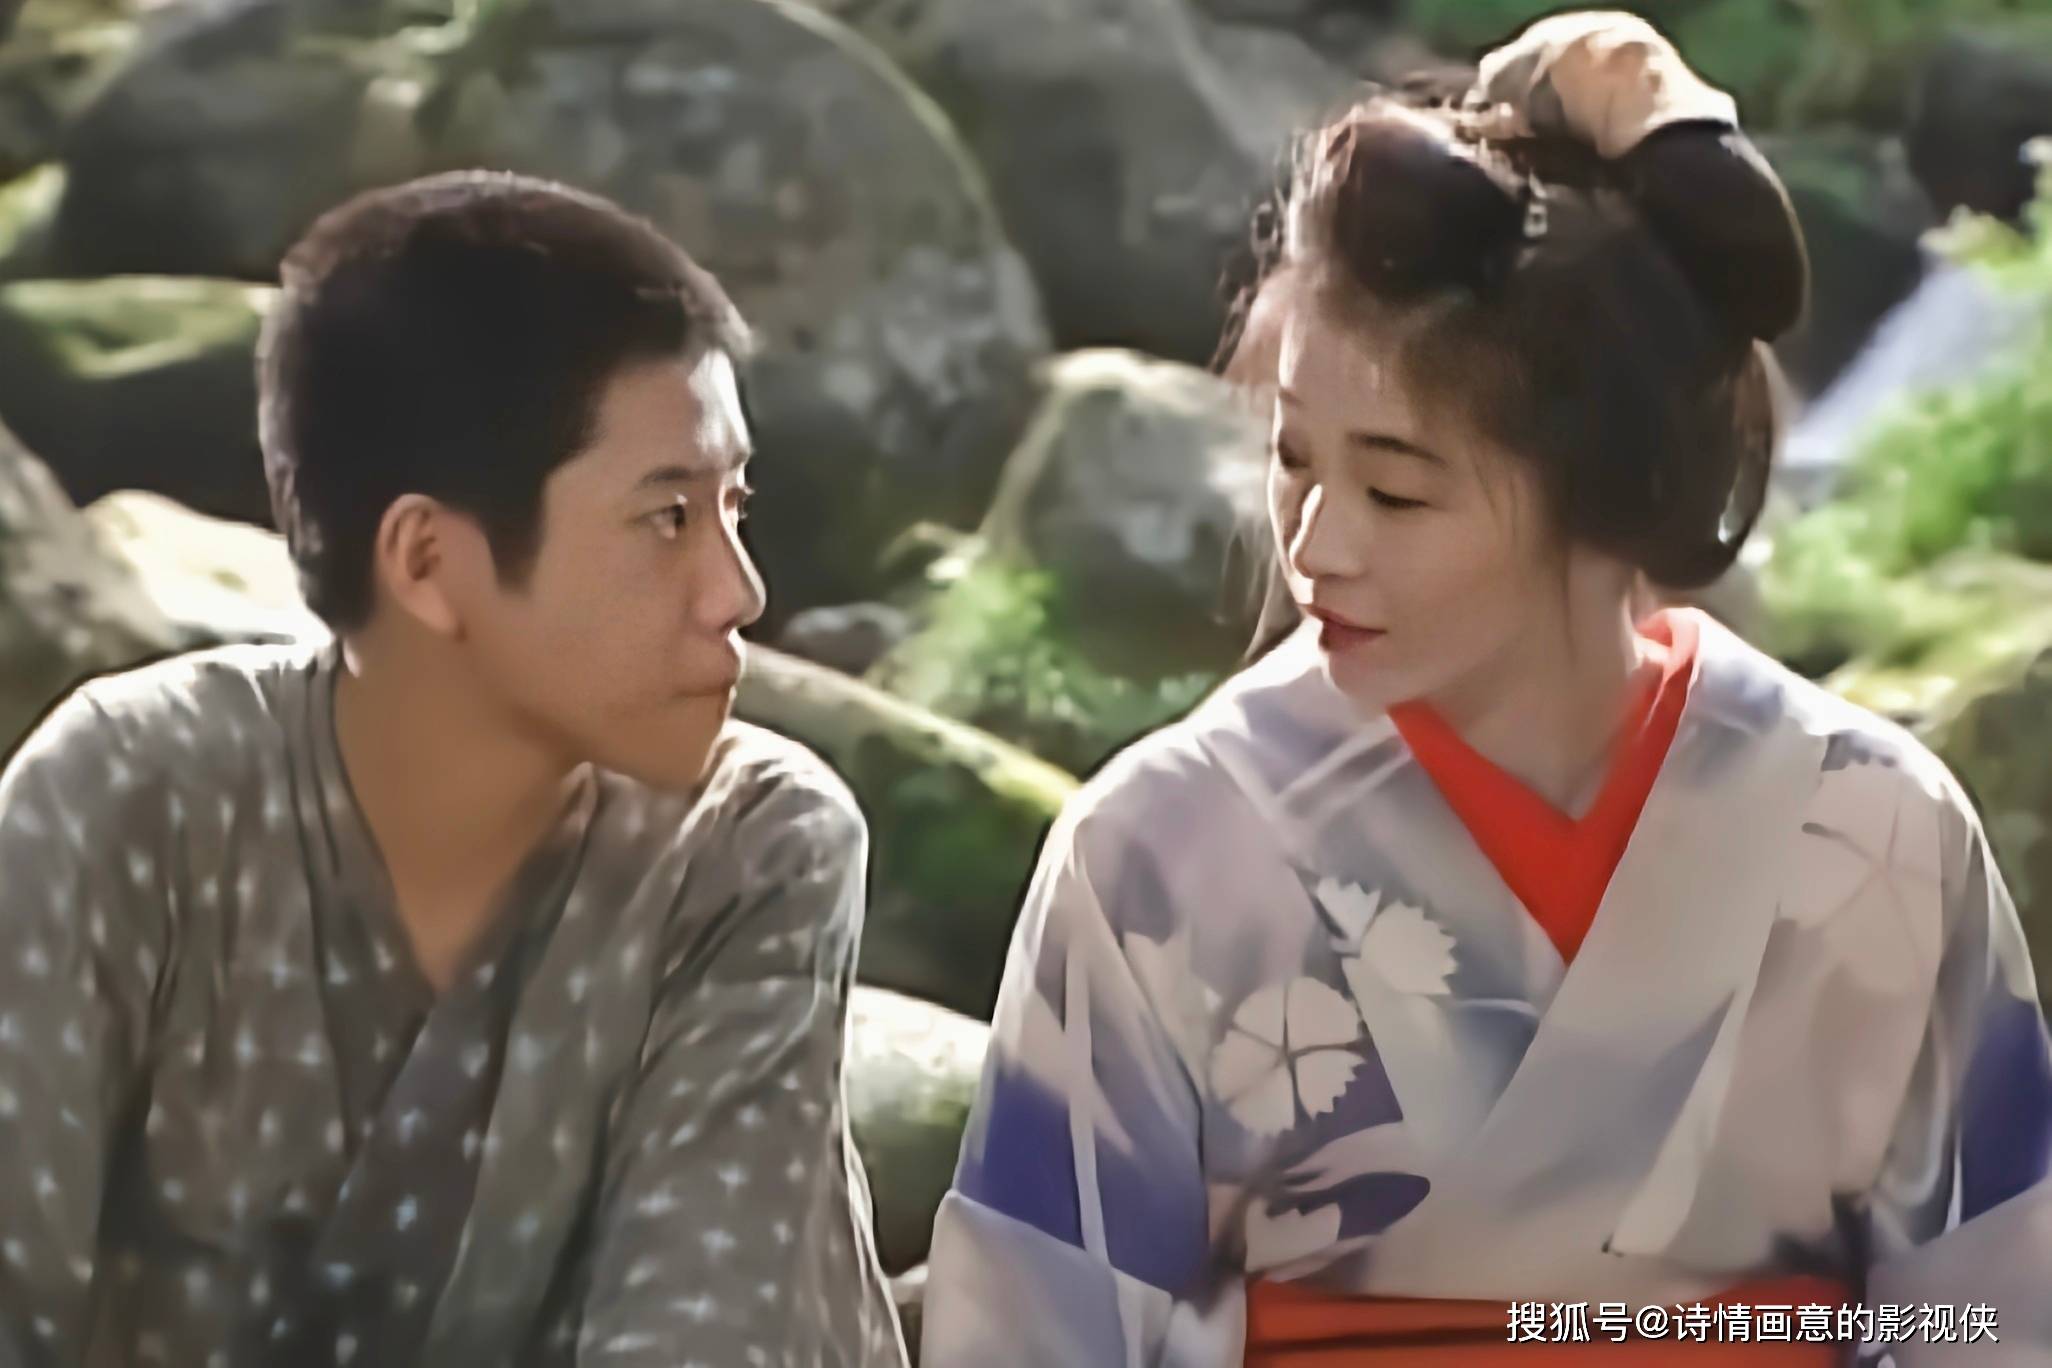 日本犯罪伦理片《越过天城》:一部关于命运,爱情与罪孽的深刻探讨